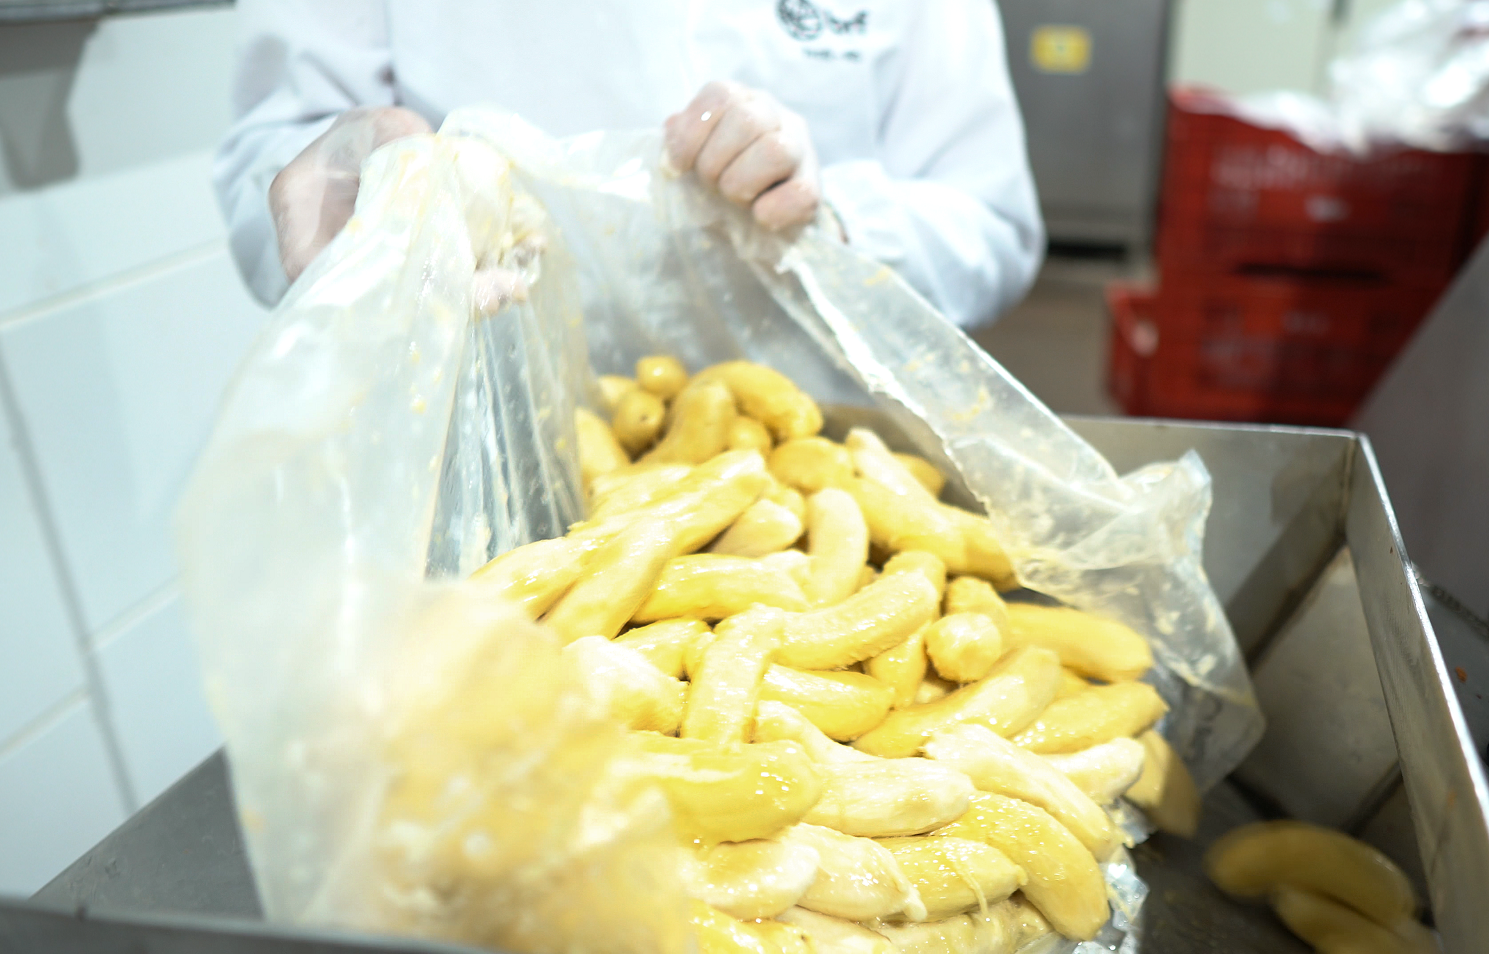 Banana usada na produção de ração natural. Foto: Divulgação/Biofresh